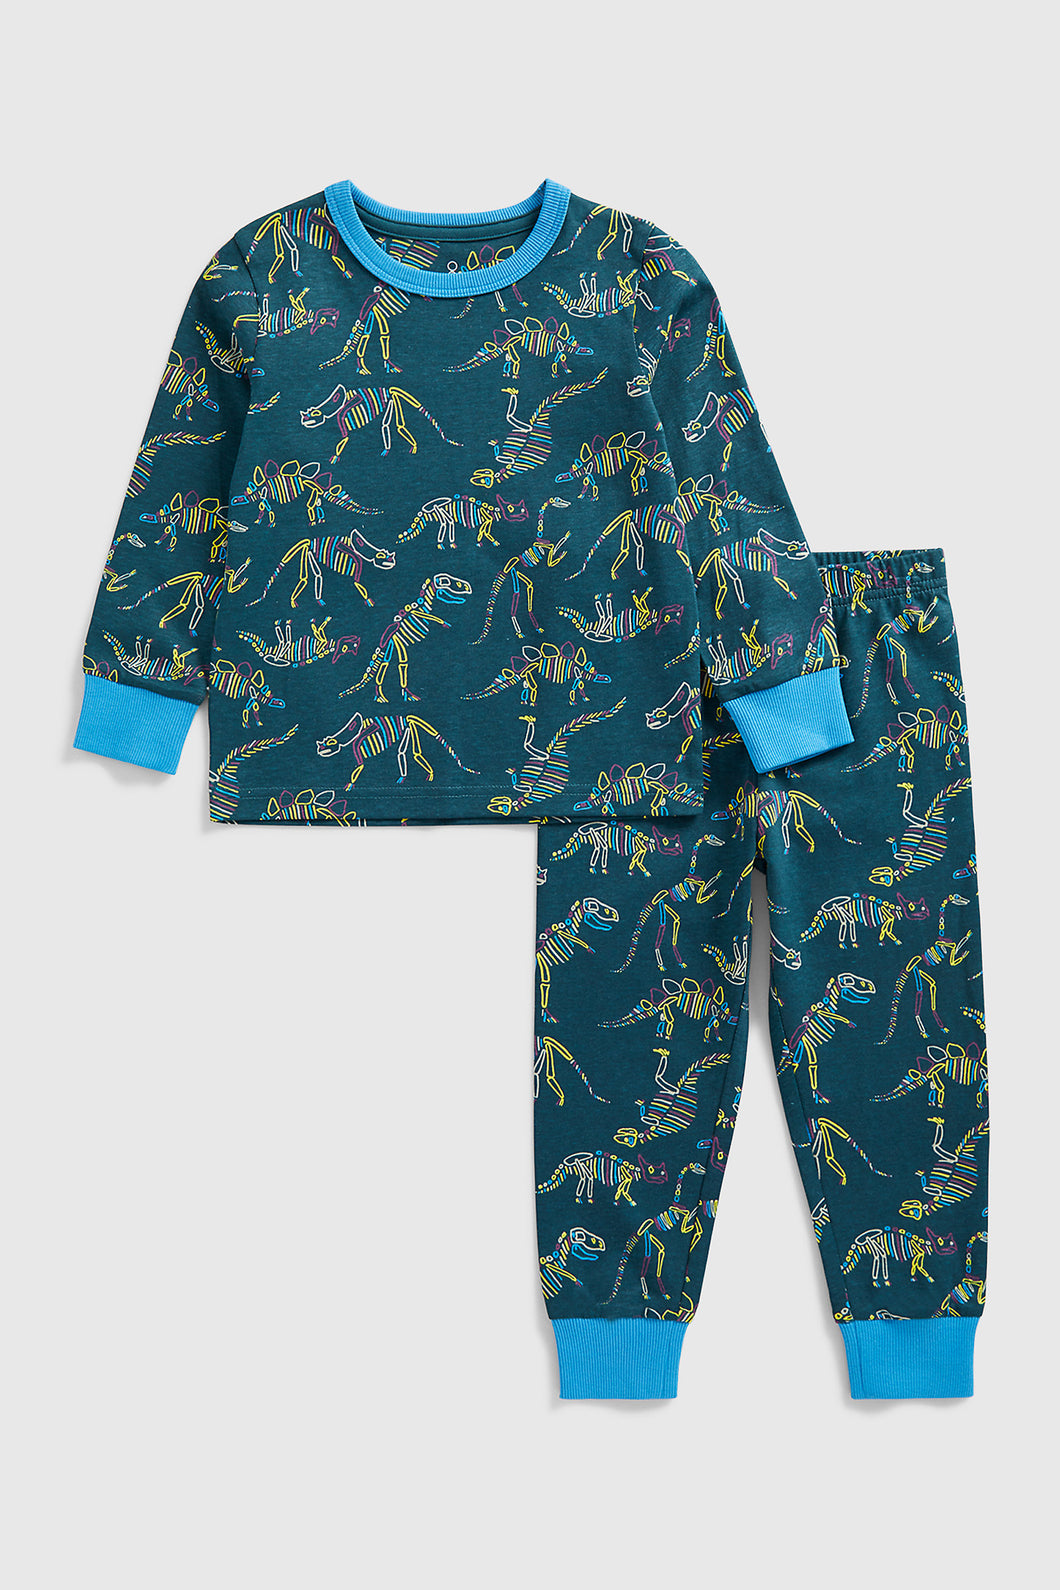 Mothercare Dinosaur Skeleton Pyjamas